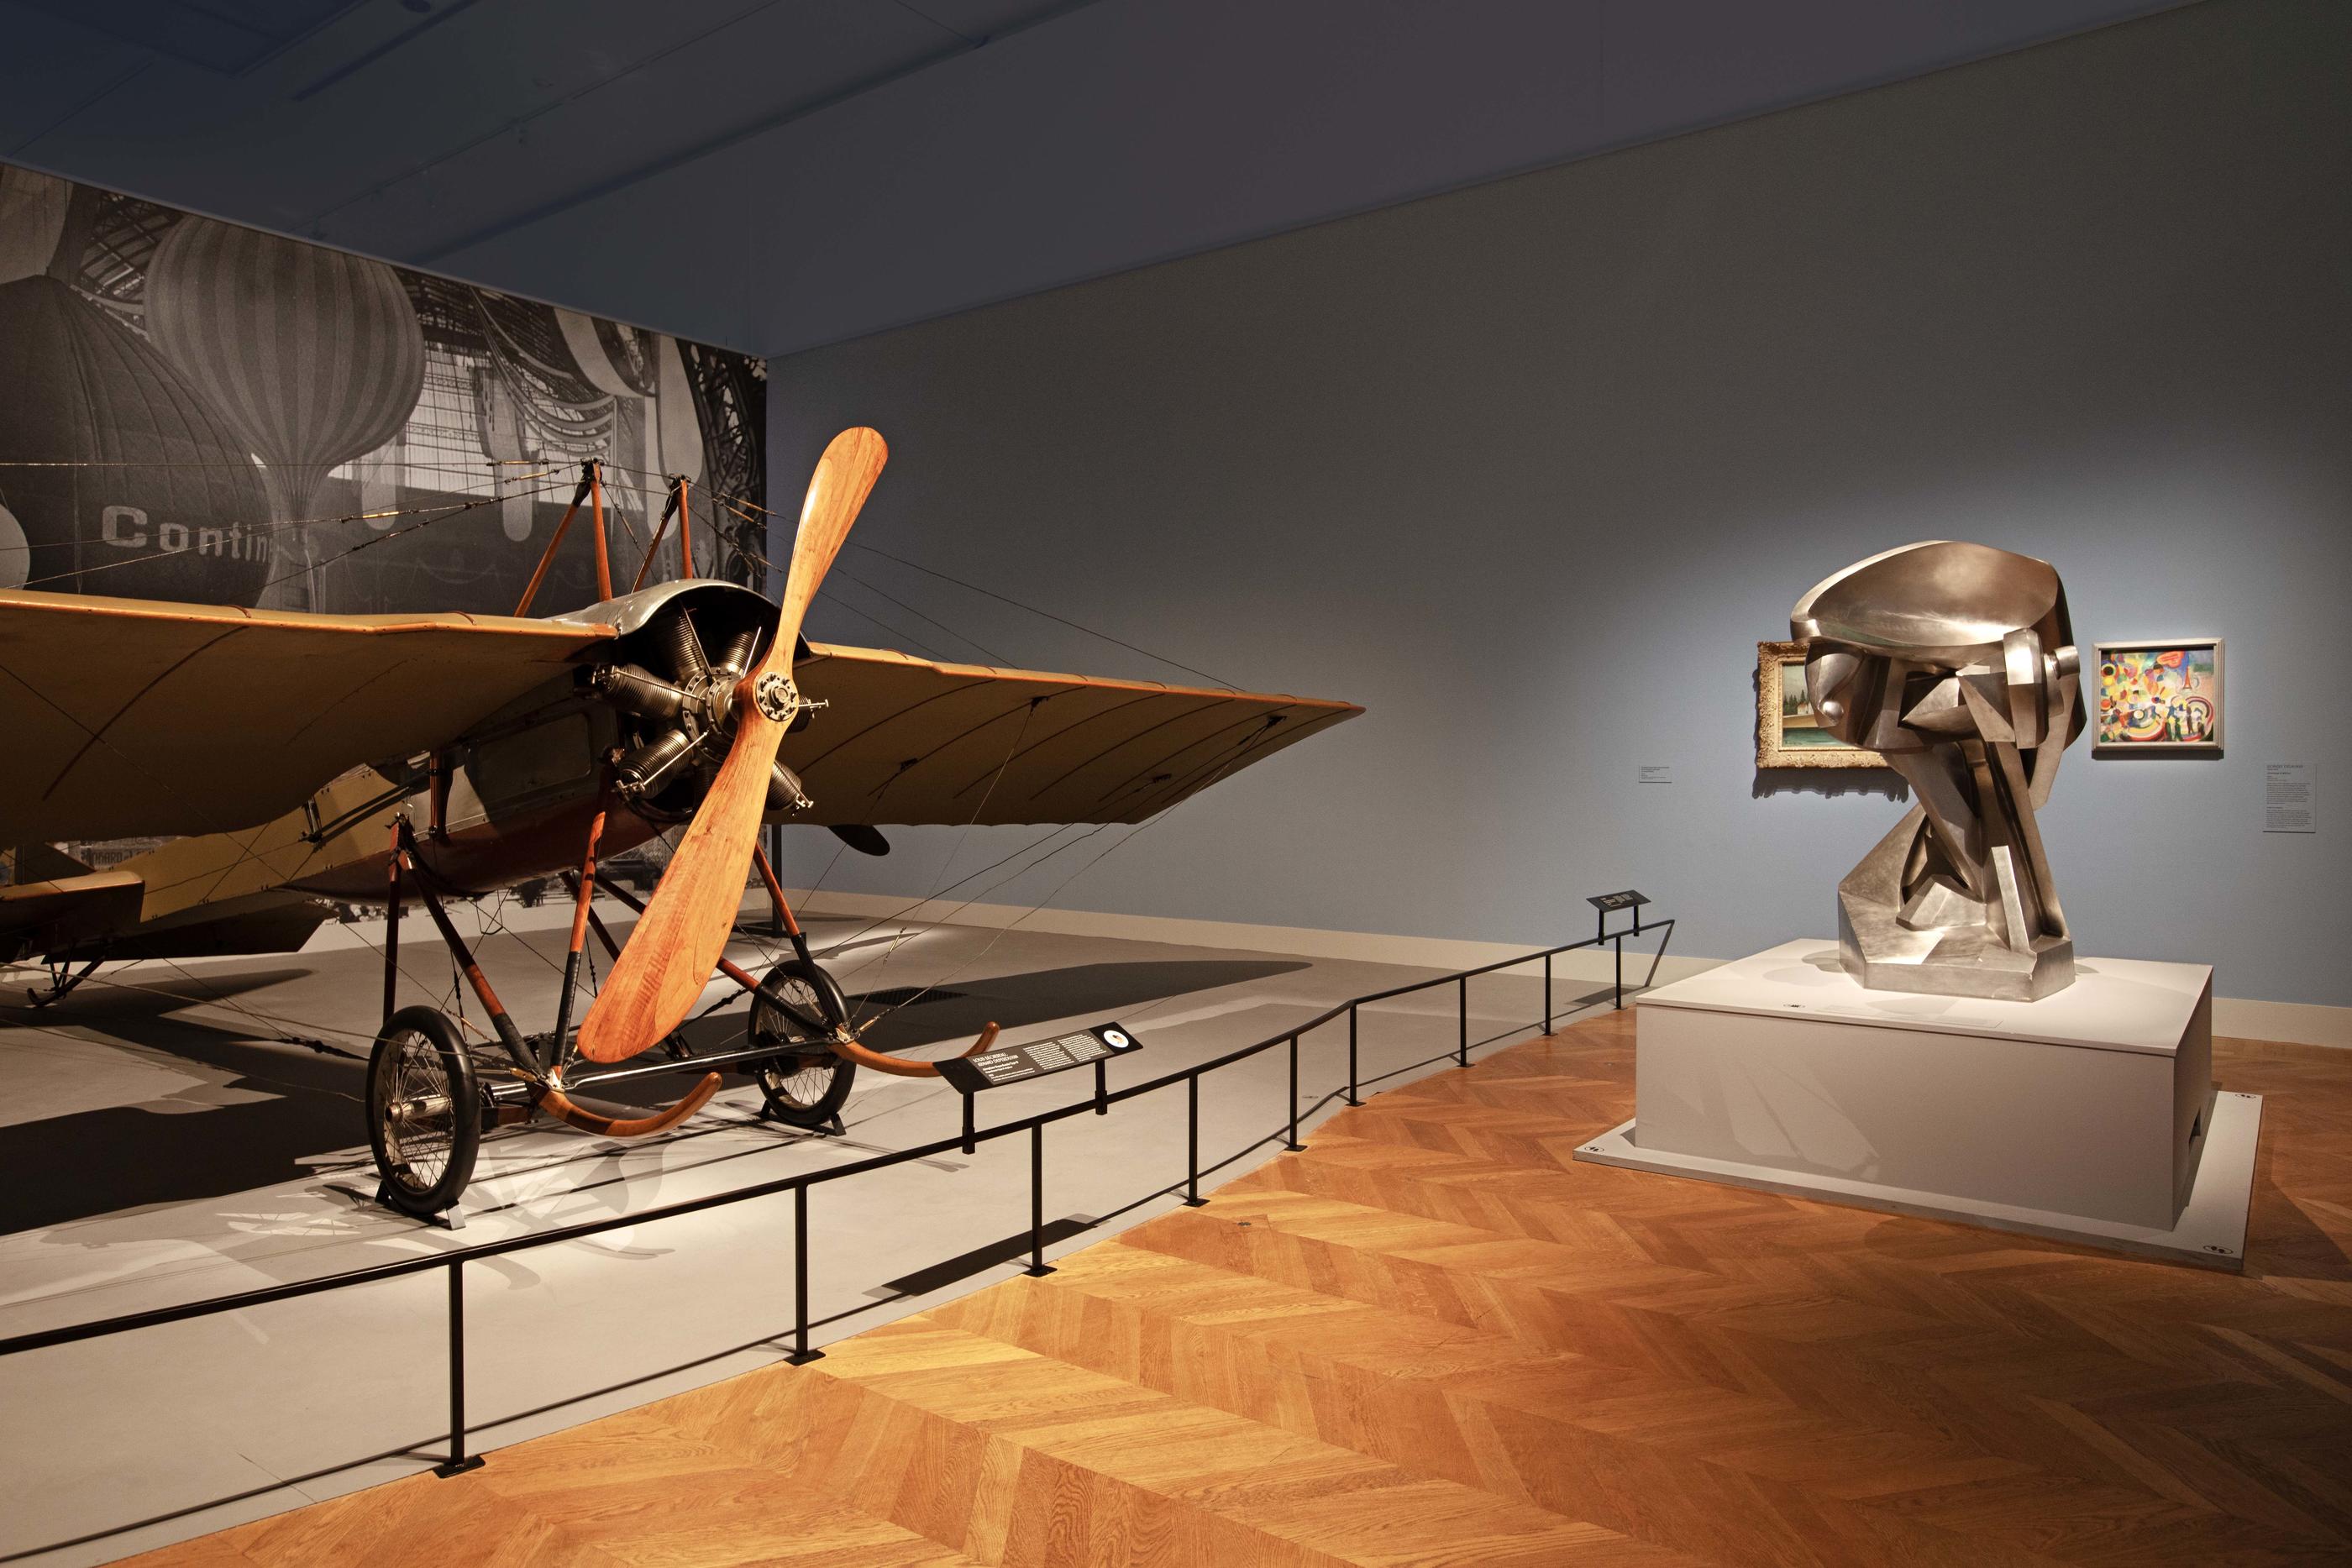 L'aéroplane de 1911 est une des pièces maîtresses de l'exposition. Paris Musées/Petit Palais/Gautier Deblonde